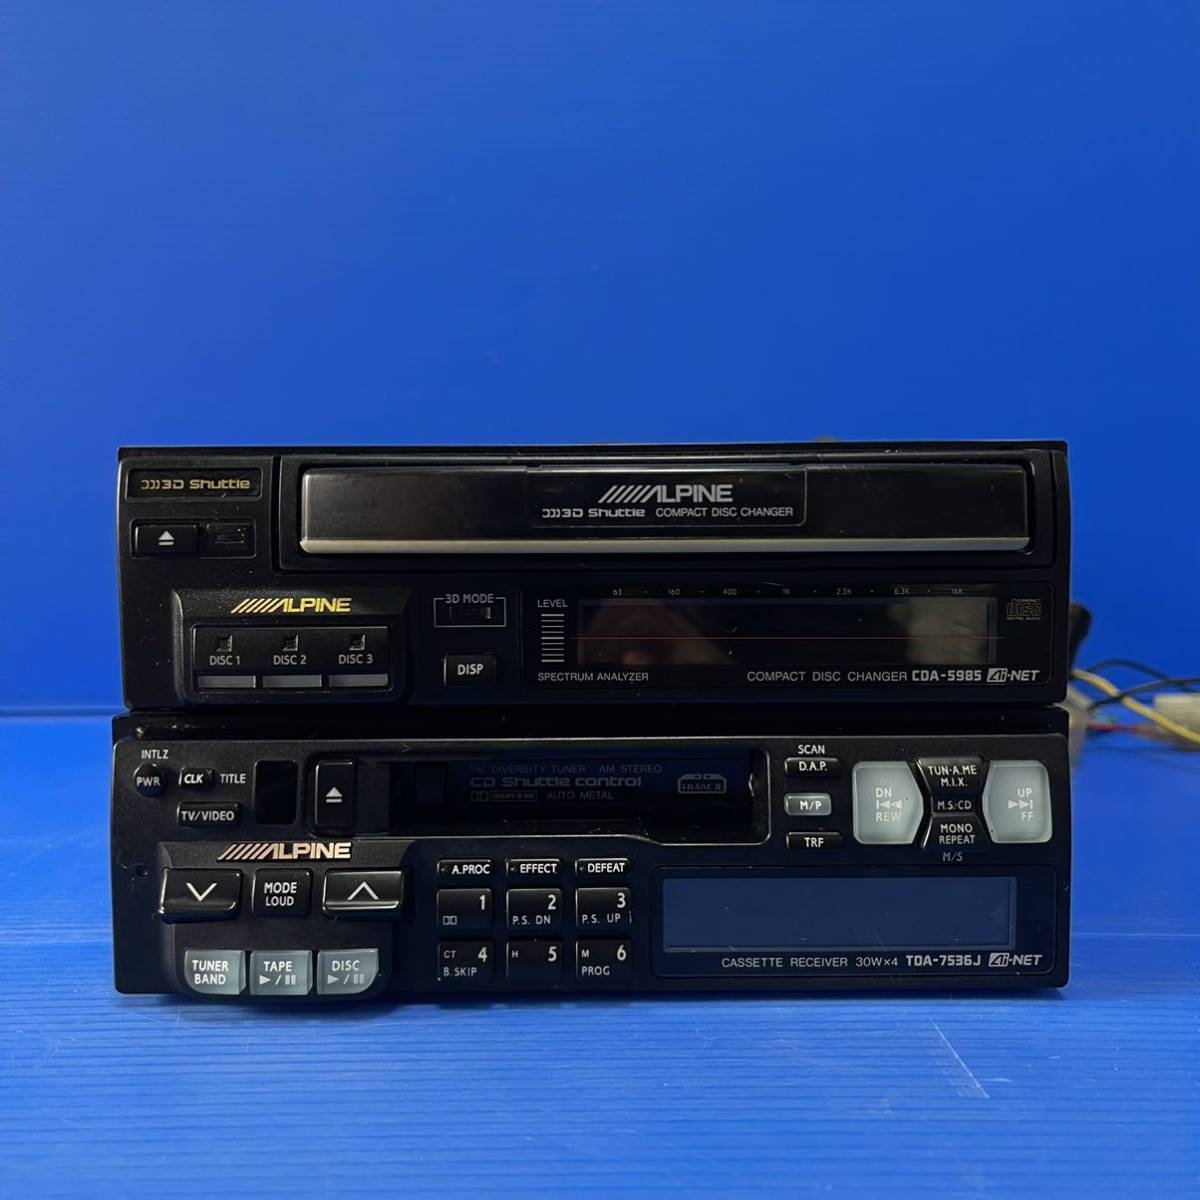 ALPINE TDA 7536J/ CDA-5985 / equalizer / Alpine / old car / Vintage / Old / graphic equalizer cassette CD player antique period thing 